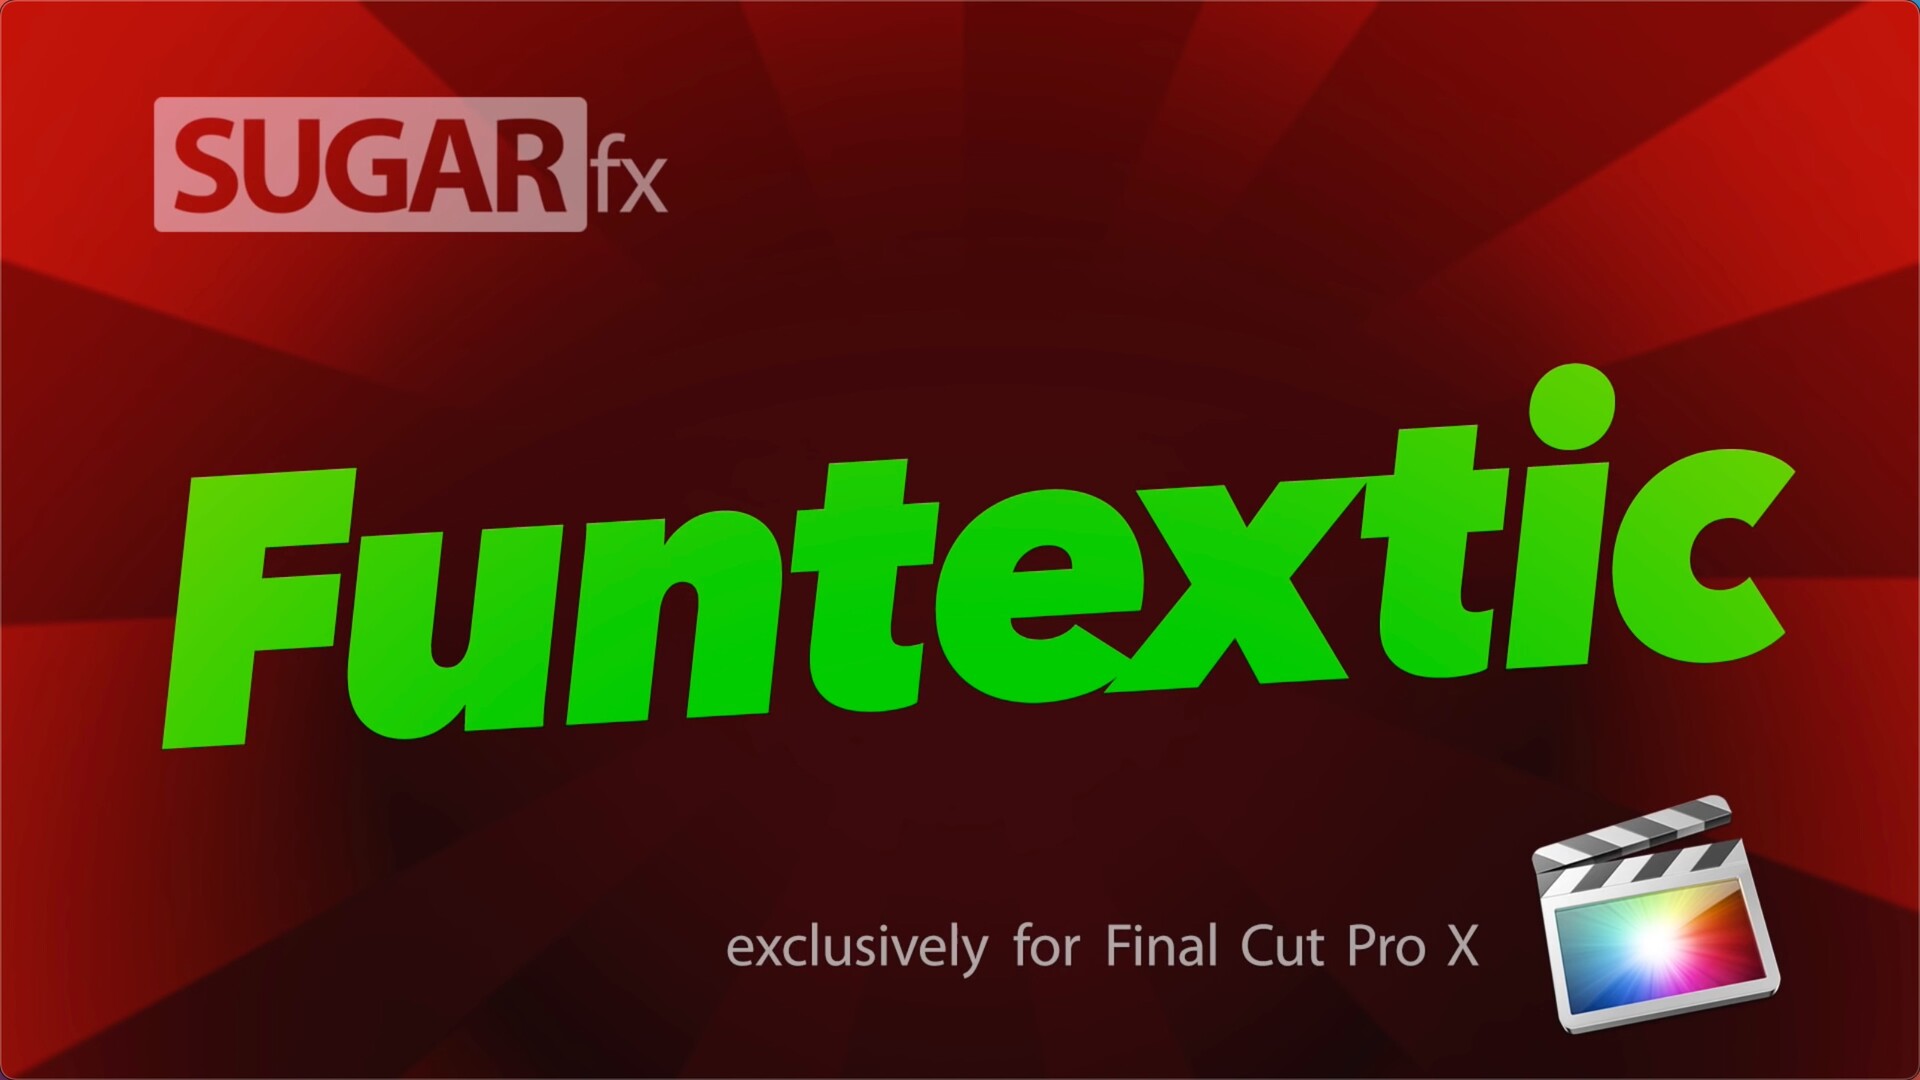 FCPX插件SUGARfx Funtextic(3D动画标题) 